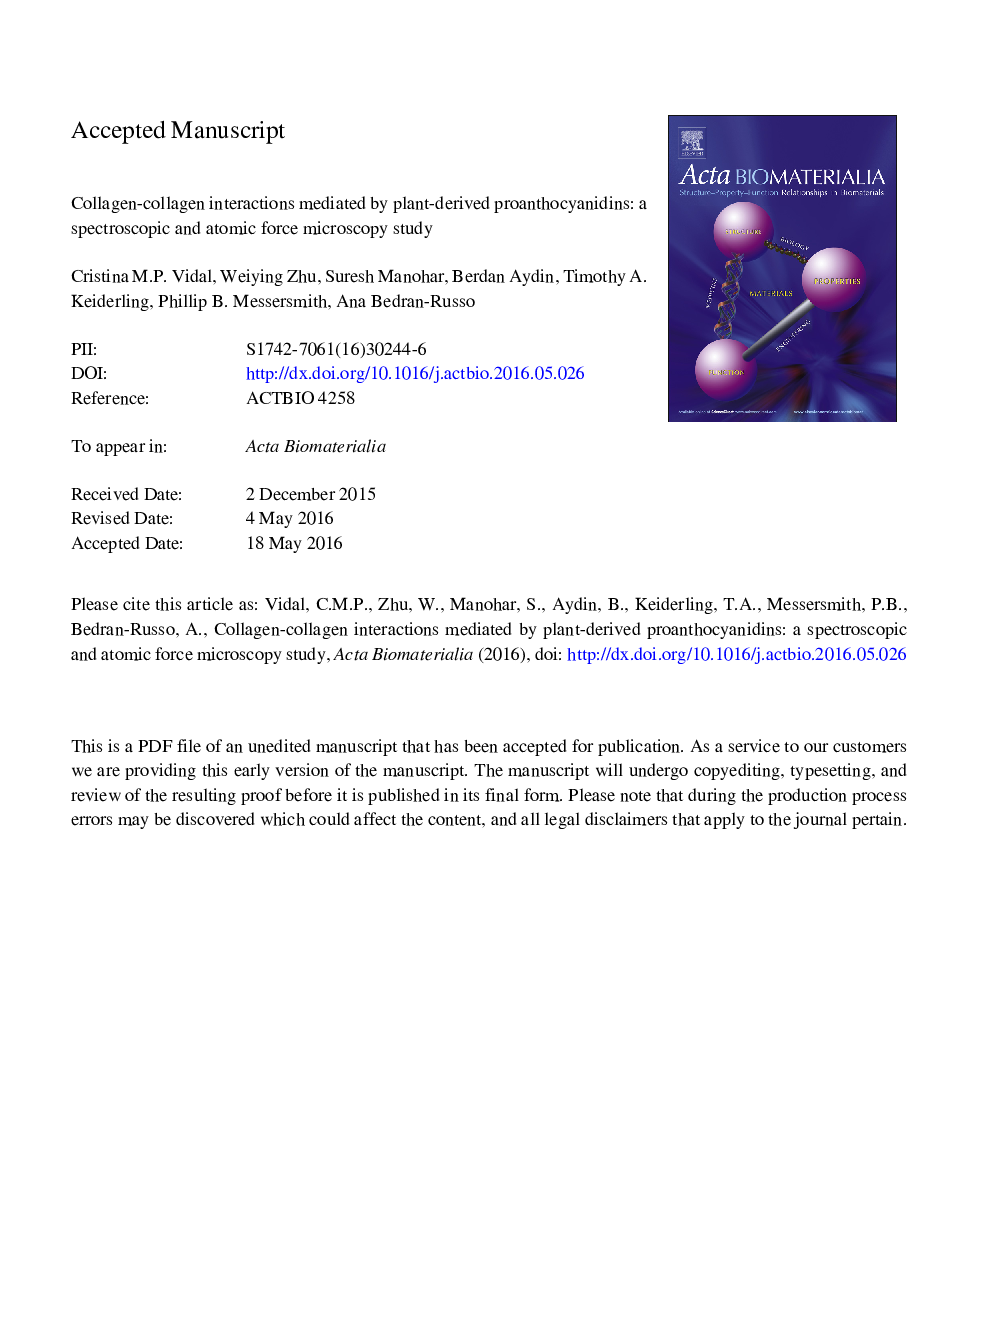 تعاملات کلاژن و کلاژن با استفاده از پروانتوسیانیدین های تولید شده گیاهی: مطالعه میکروسکوپ نیروی طیفی و اتمی 